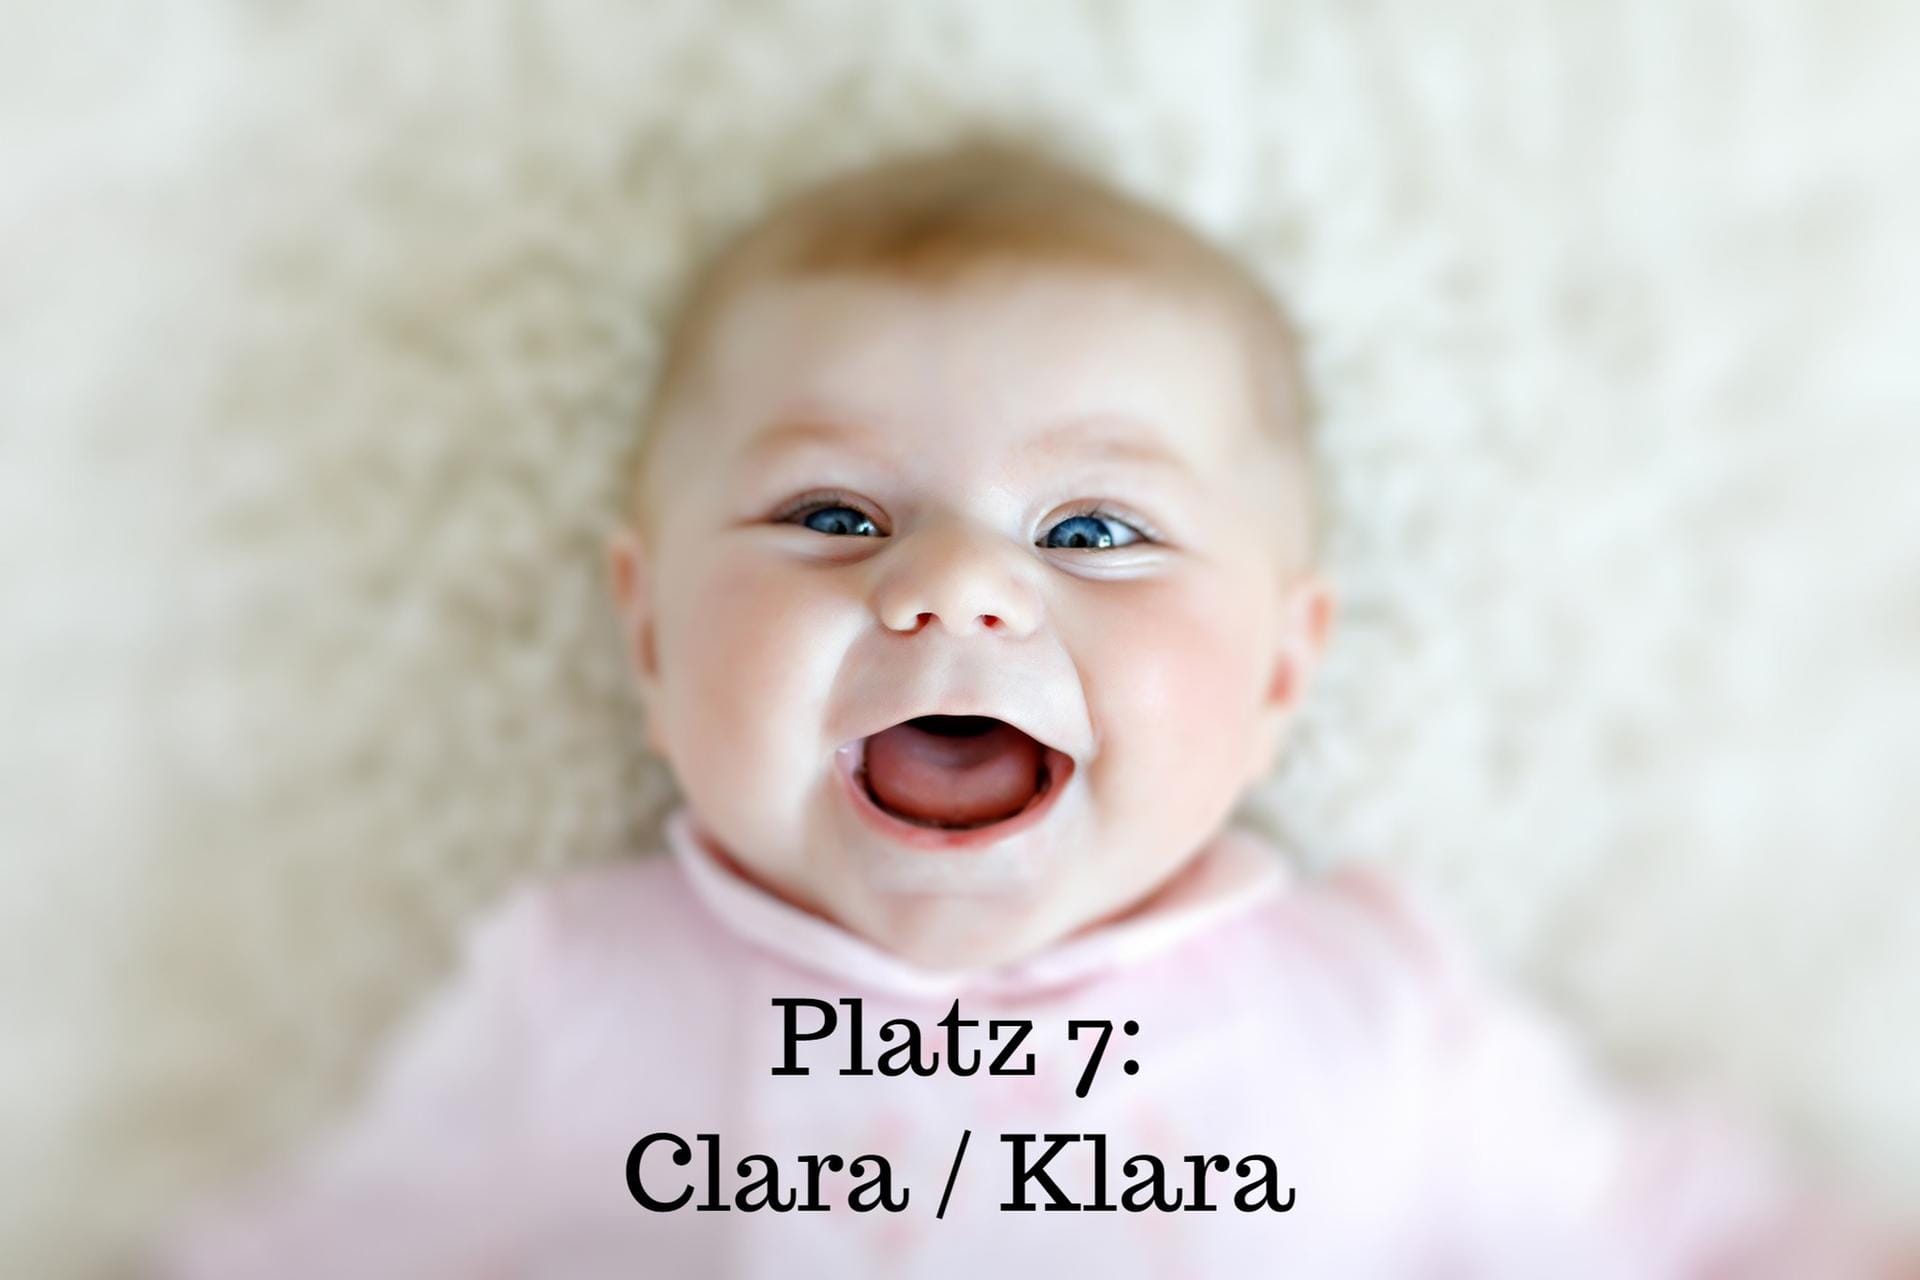 Platz 7: Clara oder Klara – Der Name lässt sich auf den lateinischen Begriff "clarus" zurückverfolgen. Clara bedeutet demnach "die Leuchtende" oder auch "die Schöne".